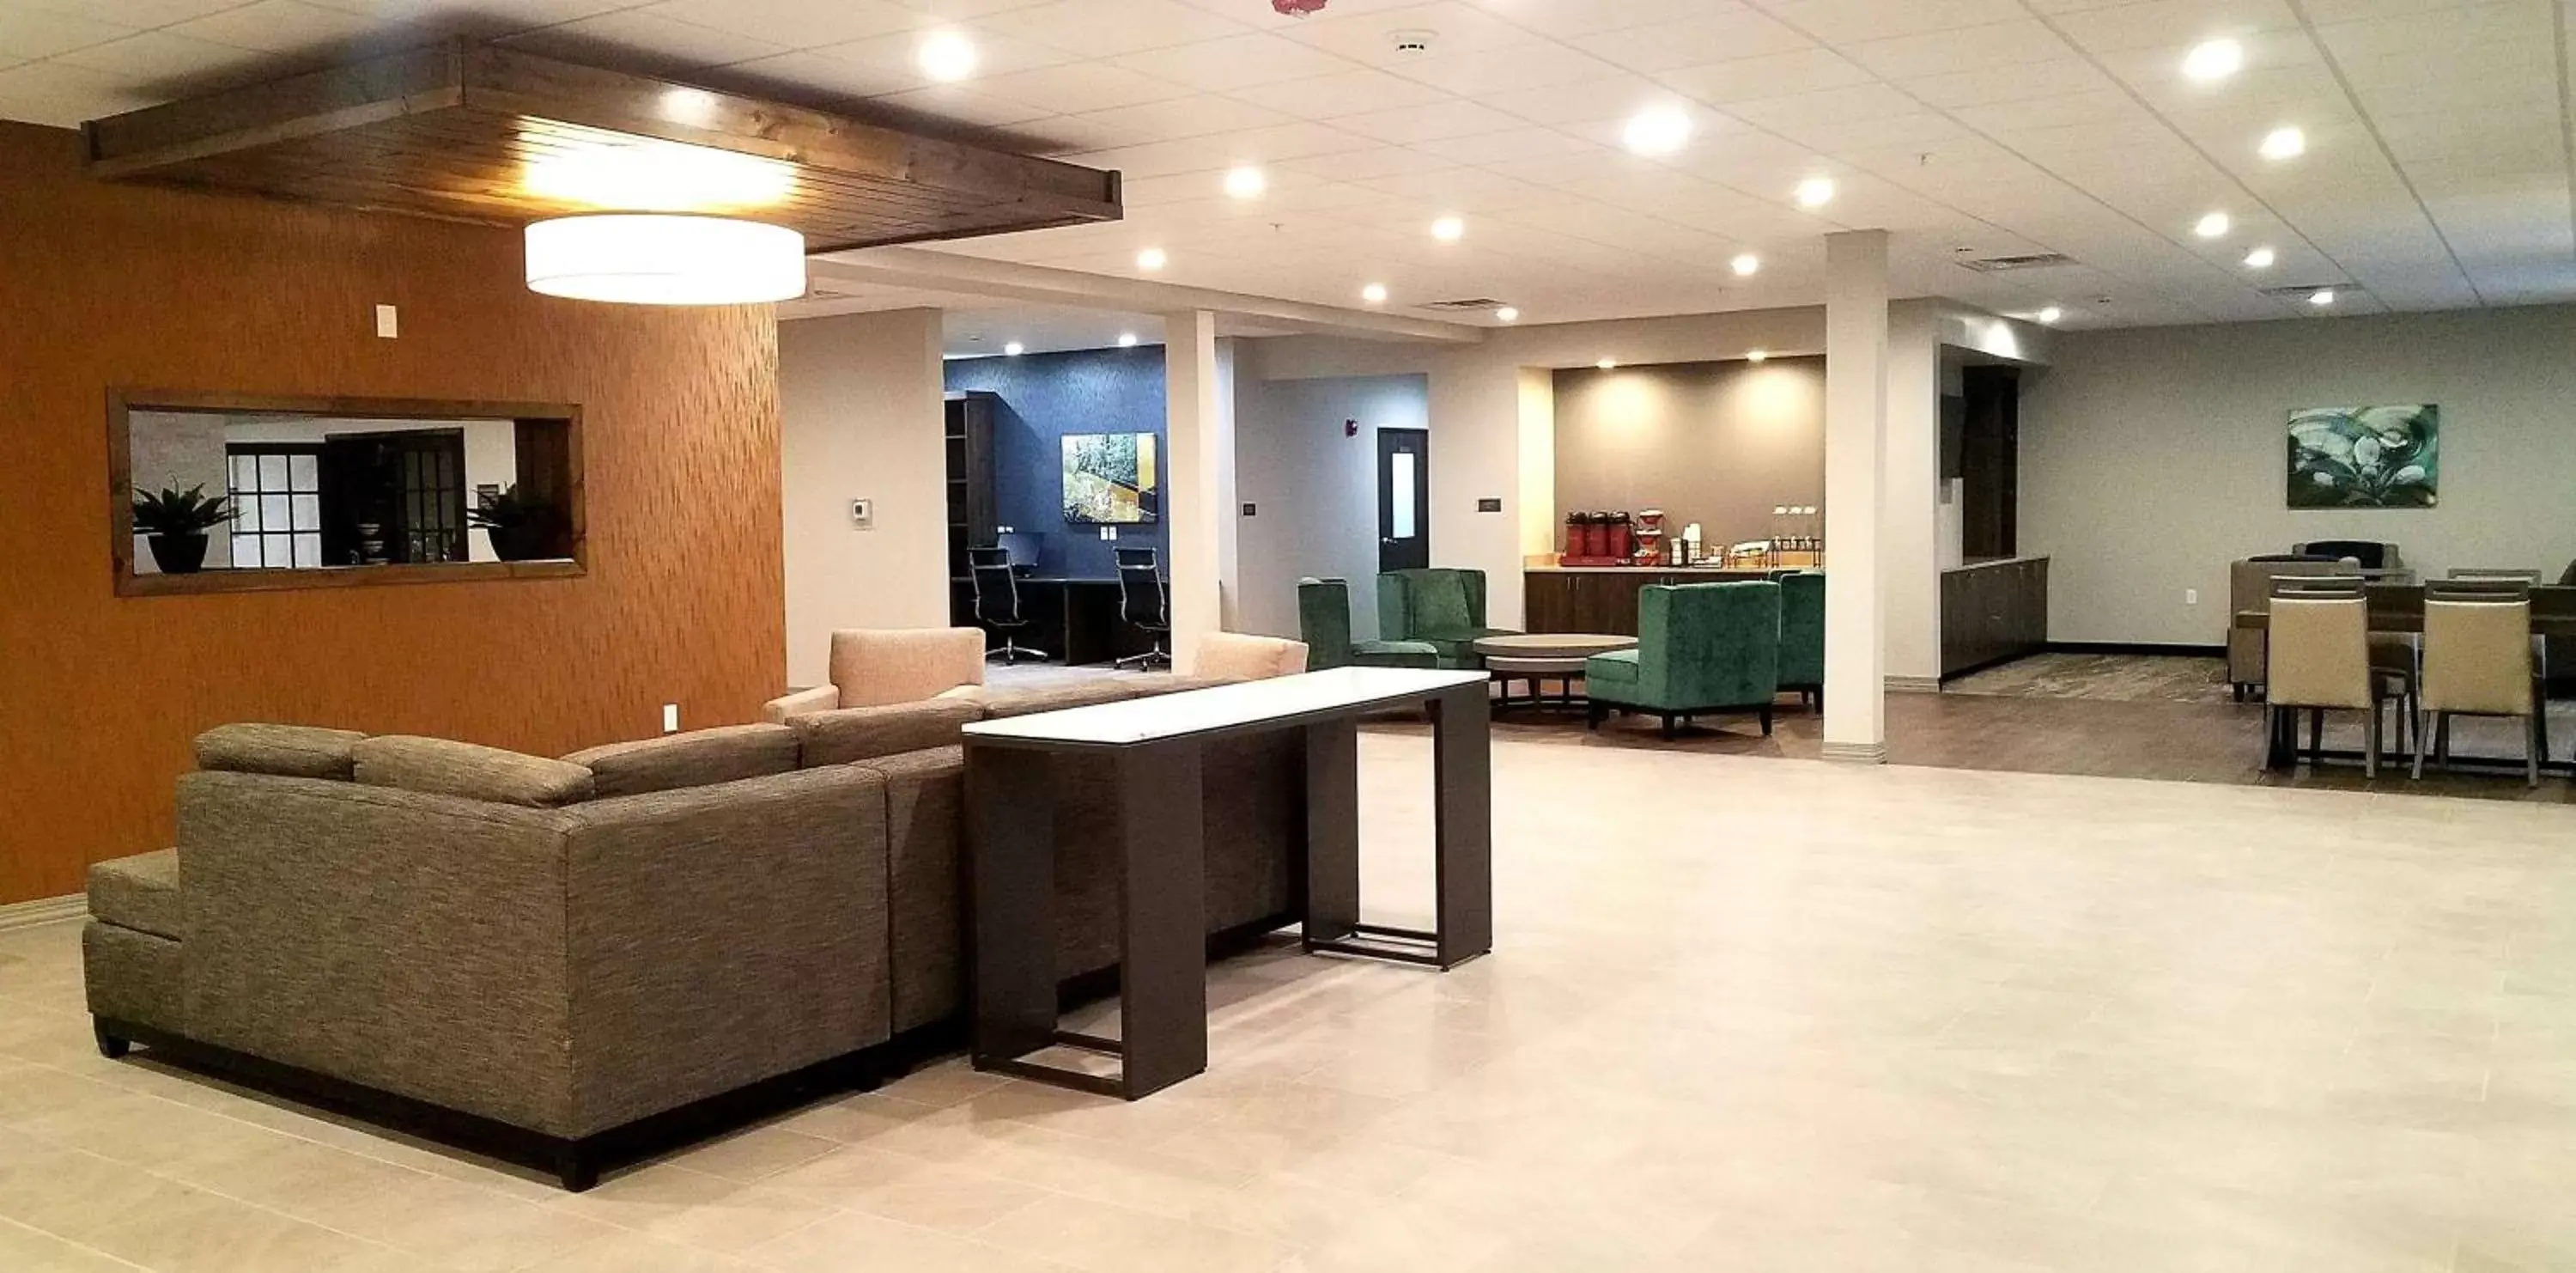 Lobby or reception, Lobby/Reception in Best Western Plus Wayland Hotel